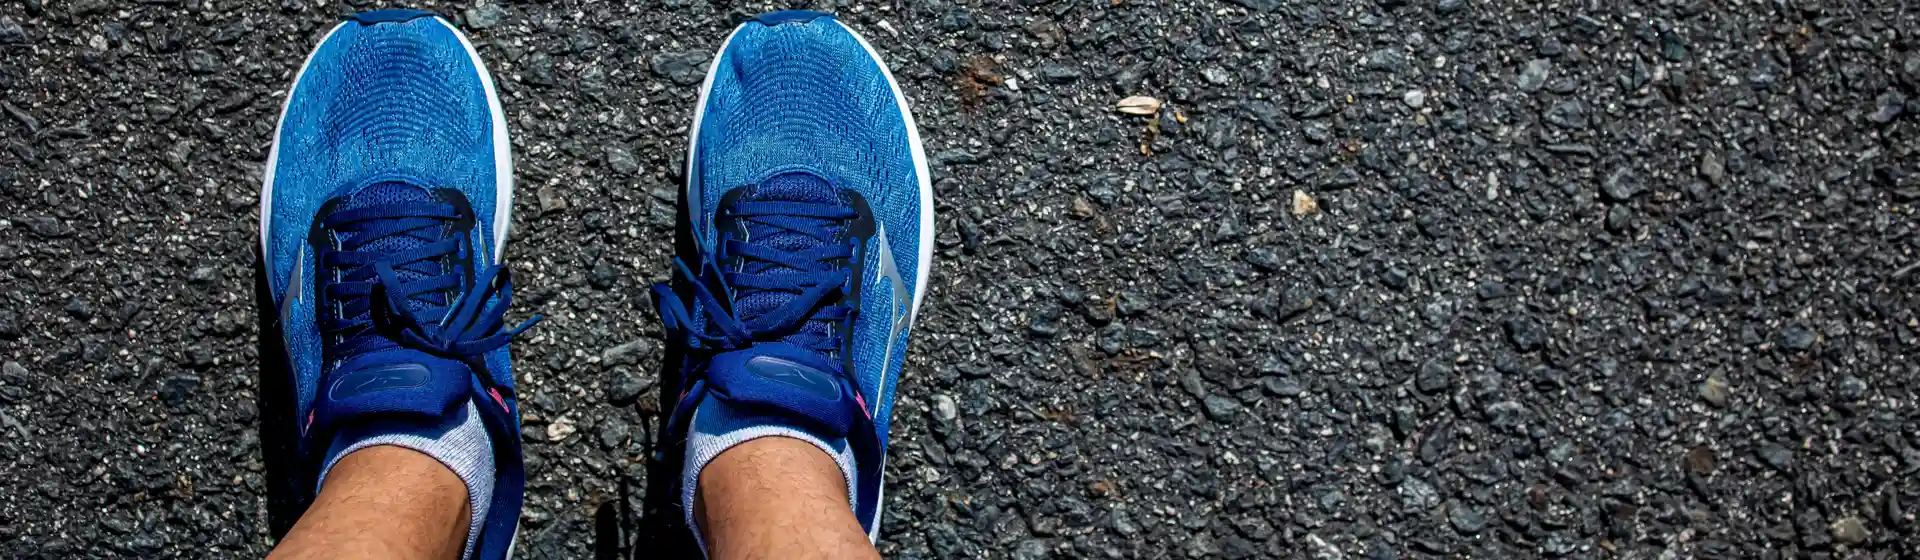 Close nos pés de um homem usando tênis mizuno azul